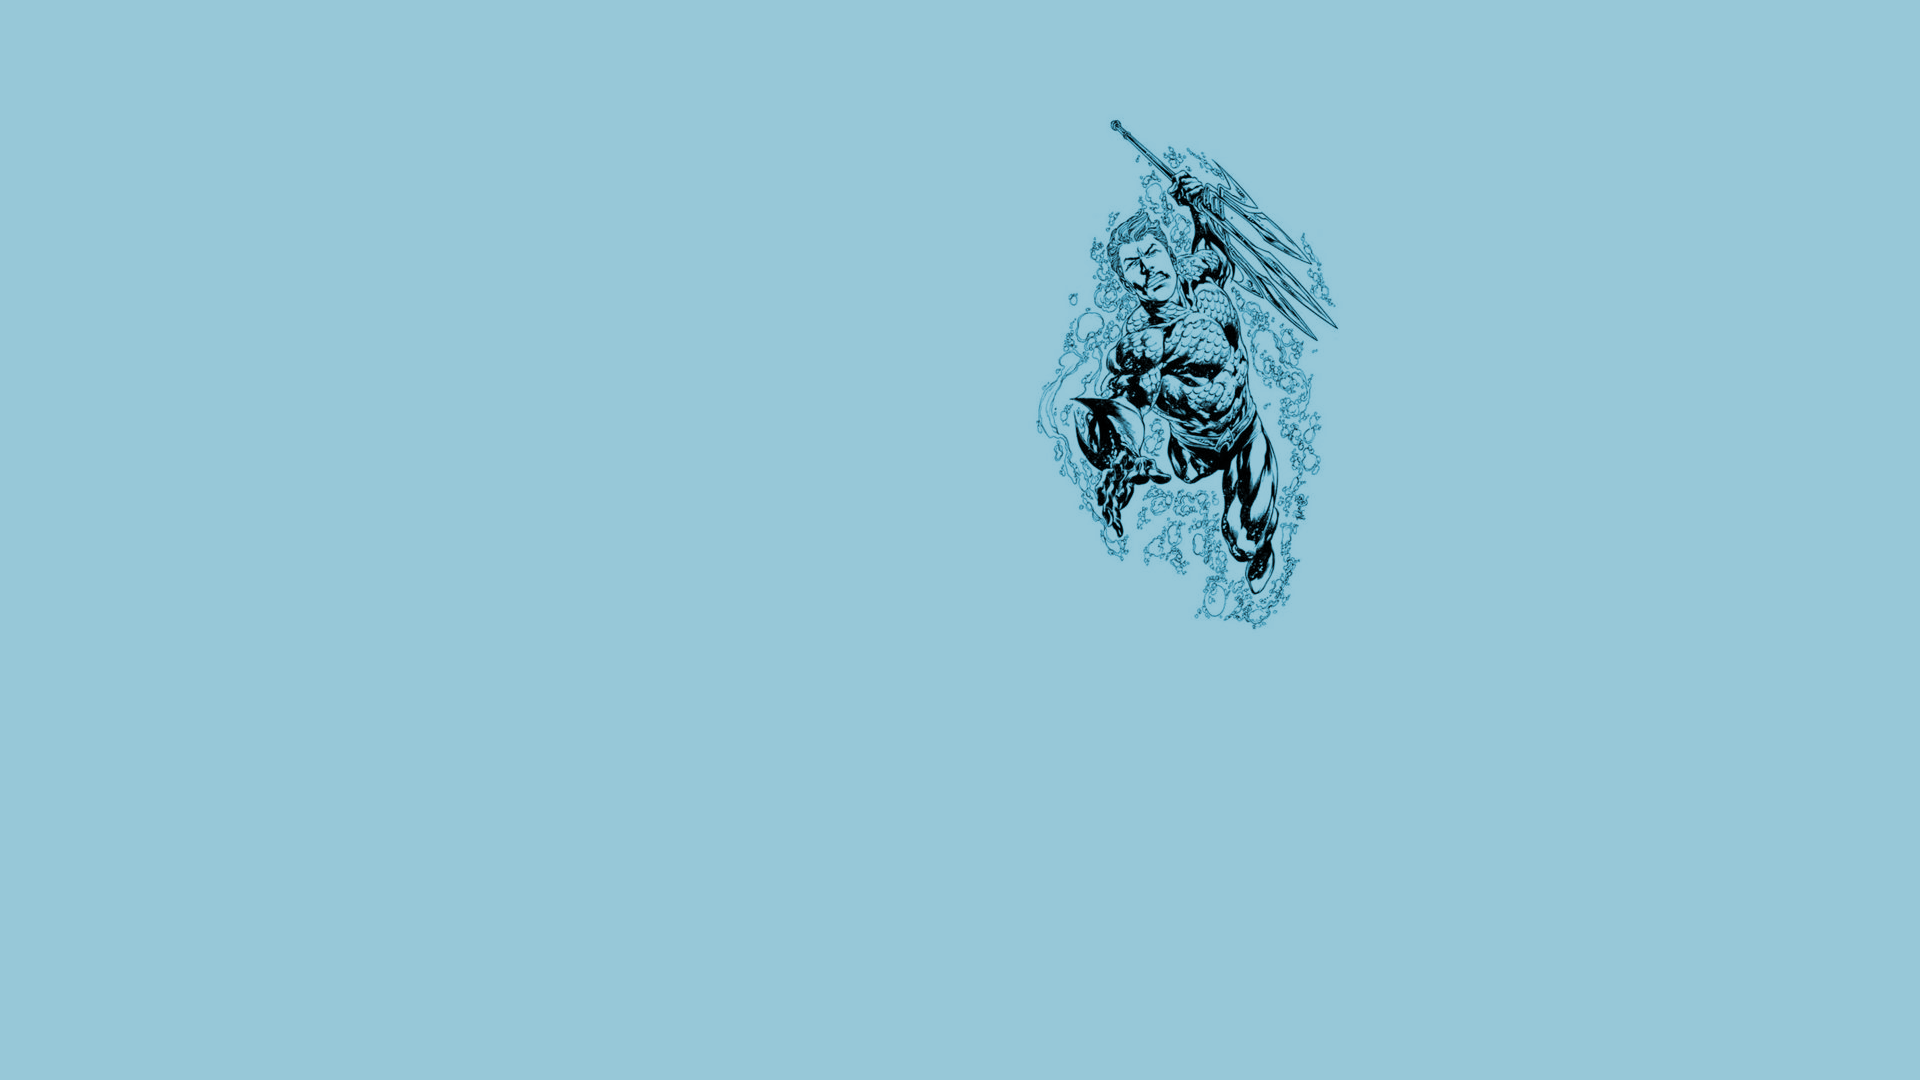 Aquaman Computer Wallpaper, Desktop Background 1920x1080 Id: 315684